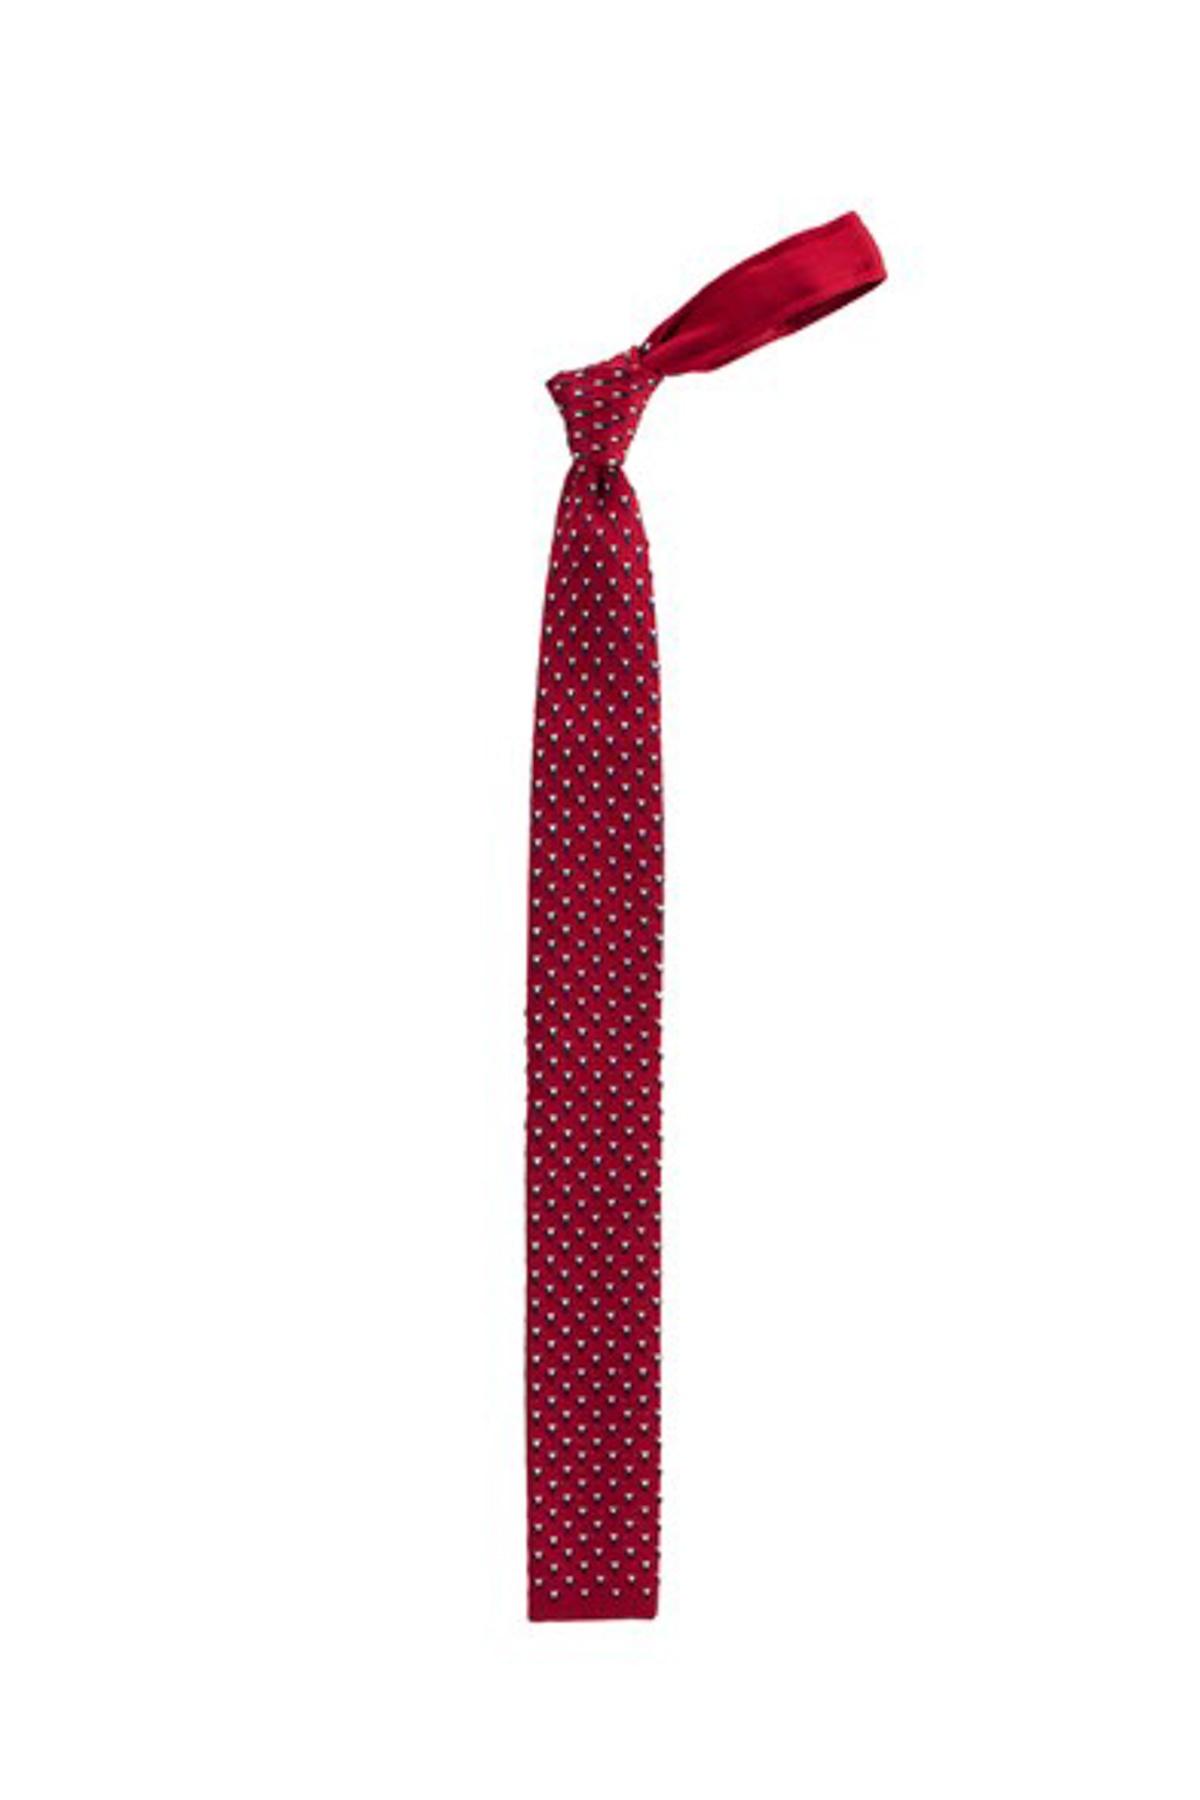 Selected image for TUDORS Pletena uža kravata crvena